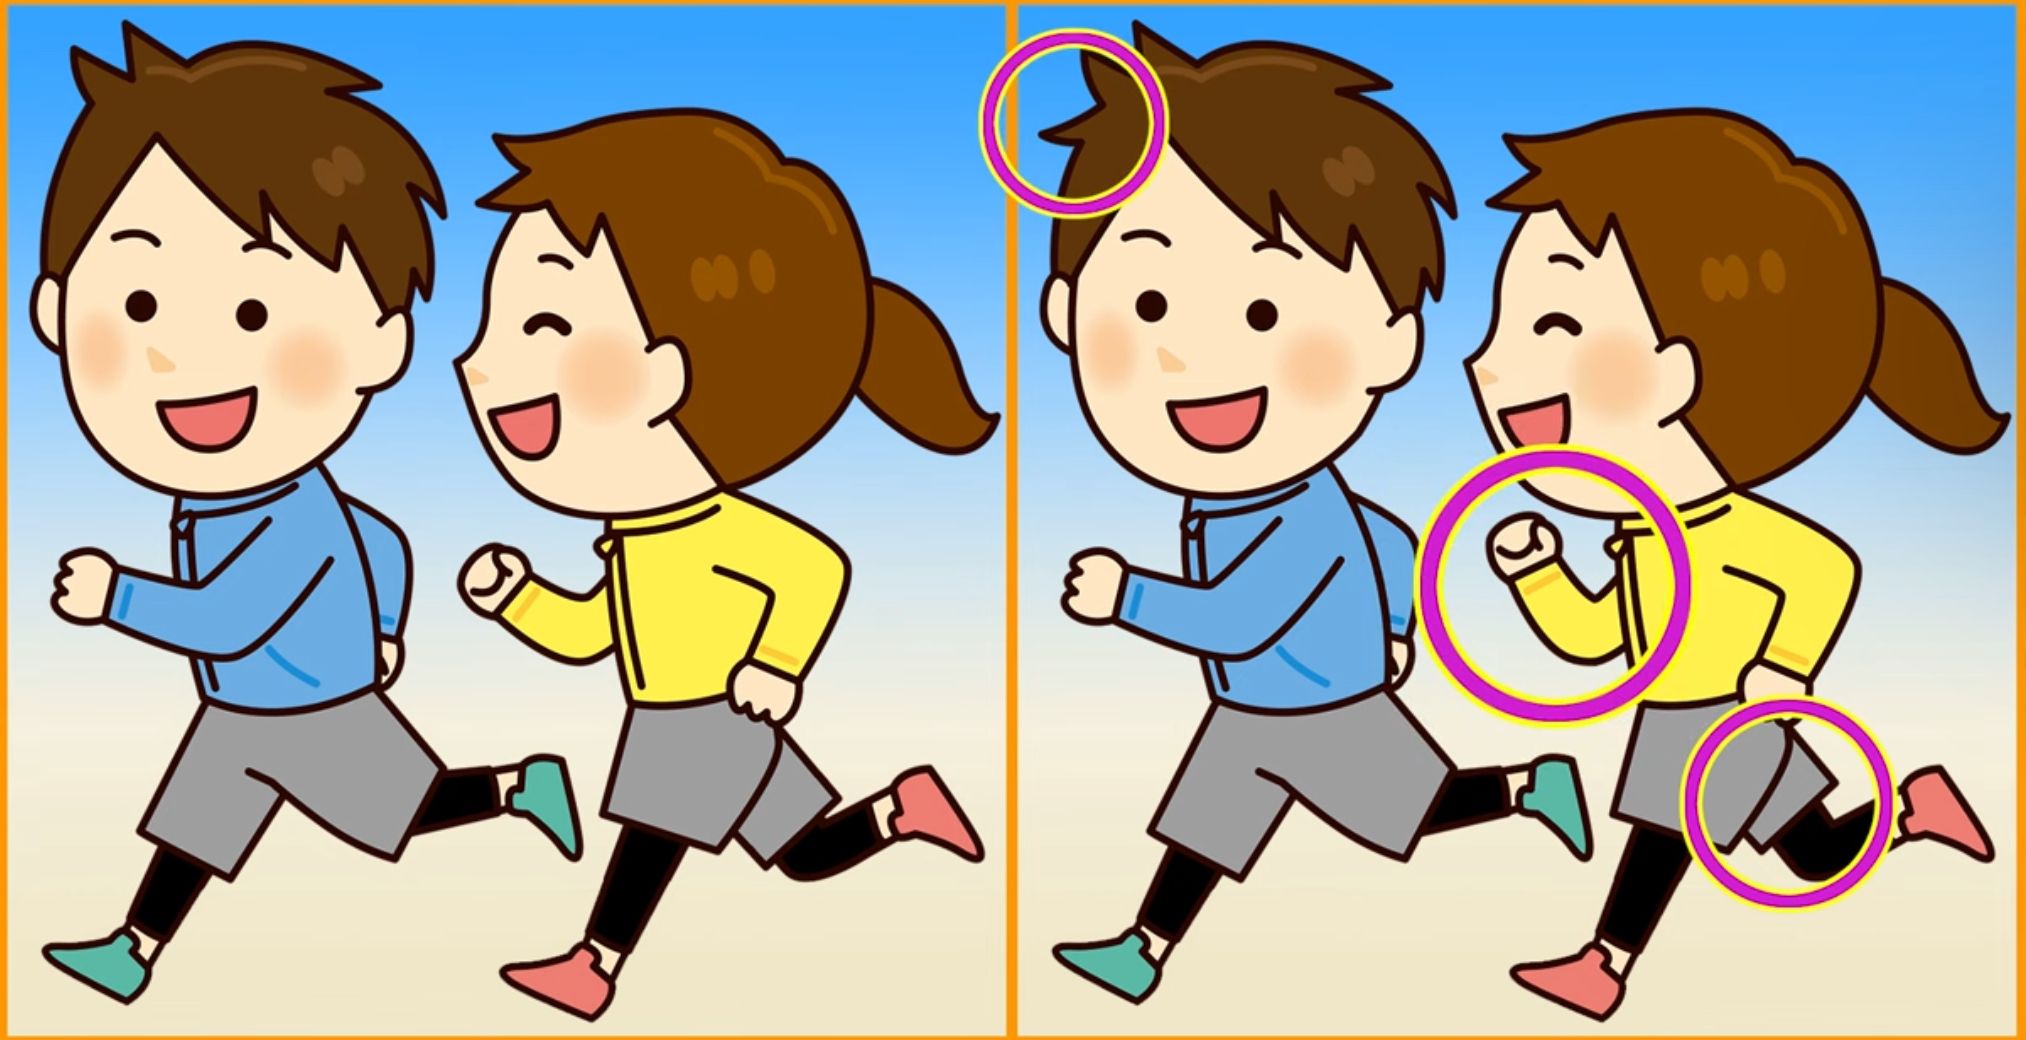 Jawaban tes IQ dalam menemukan perbedaan gambar pasangan yang sedang jogging.